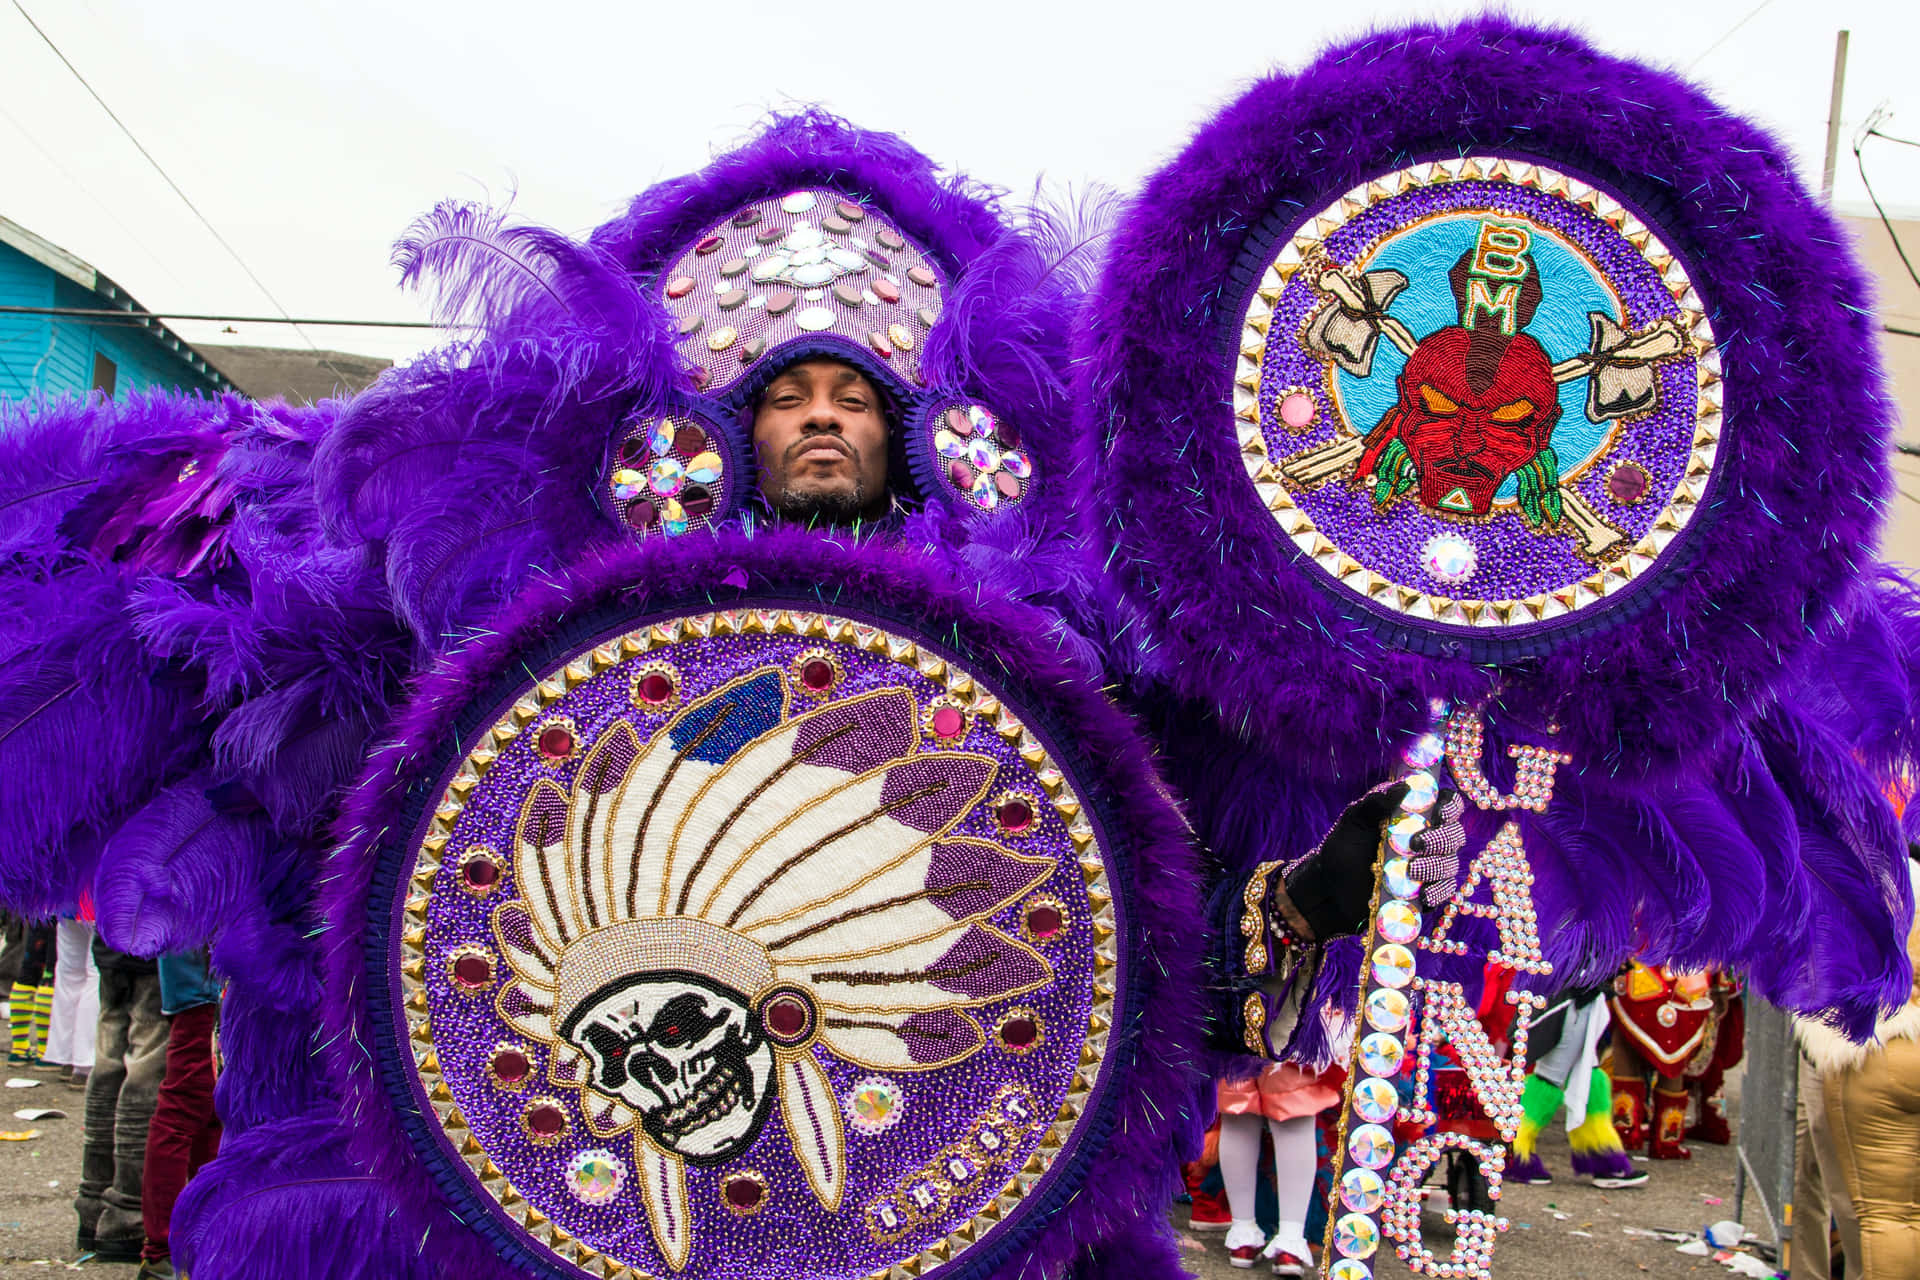 Ifestaioli Partecipano Alla Celebrazione Di Mardi Gras A New Orleans